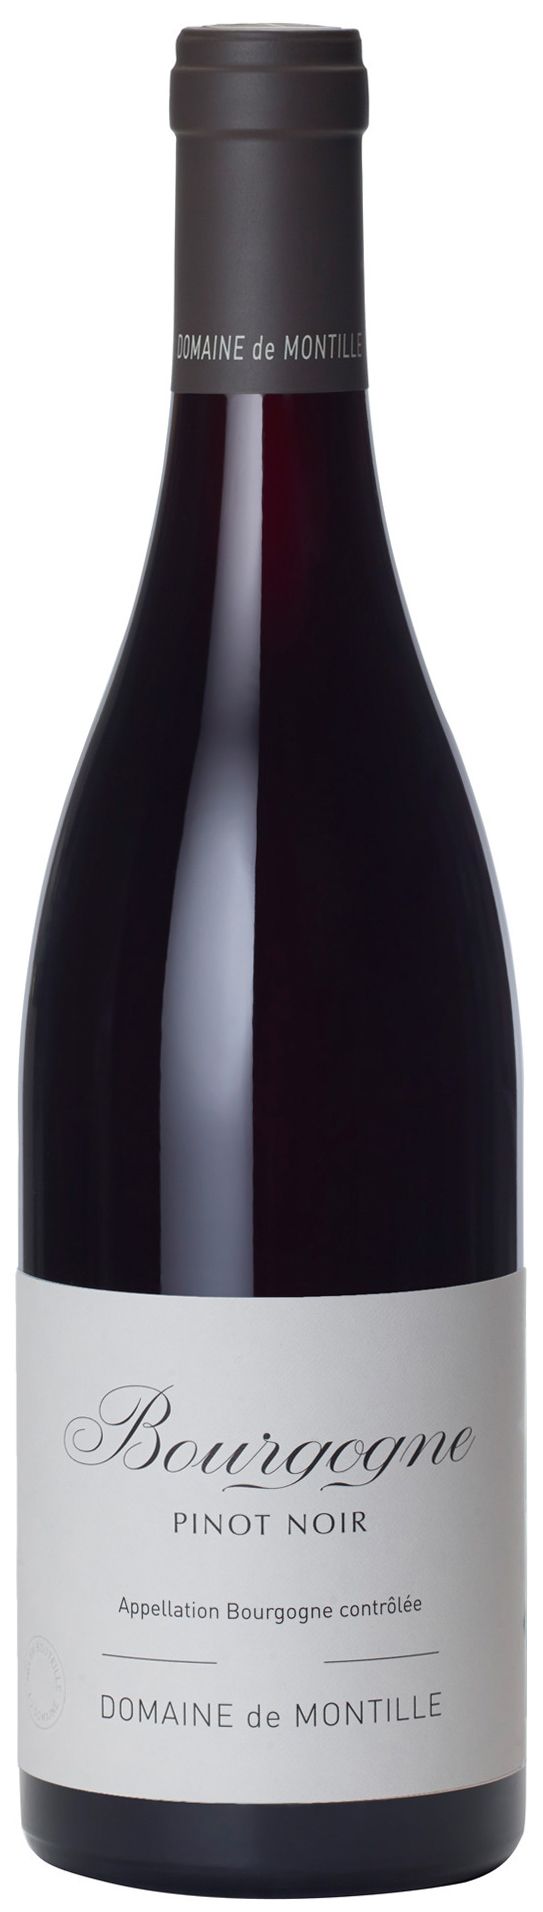 Domaine De Montille, Bourgogne Pinot Noir, 2014